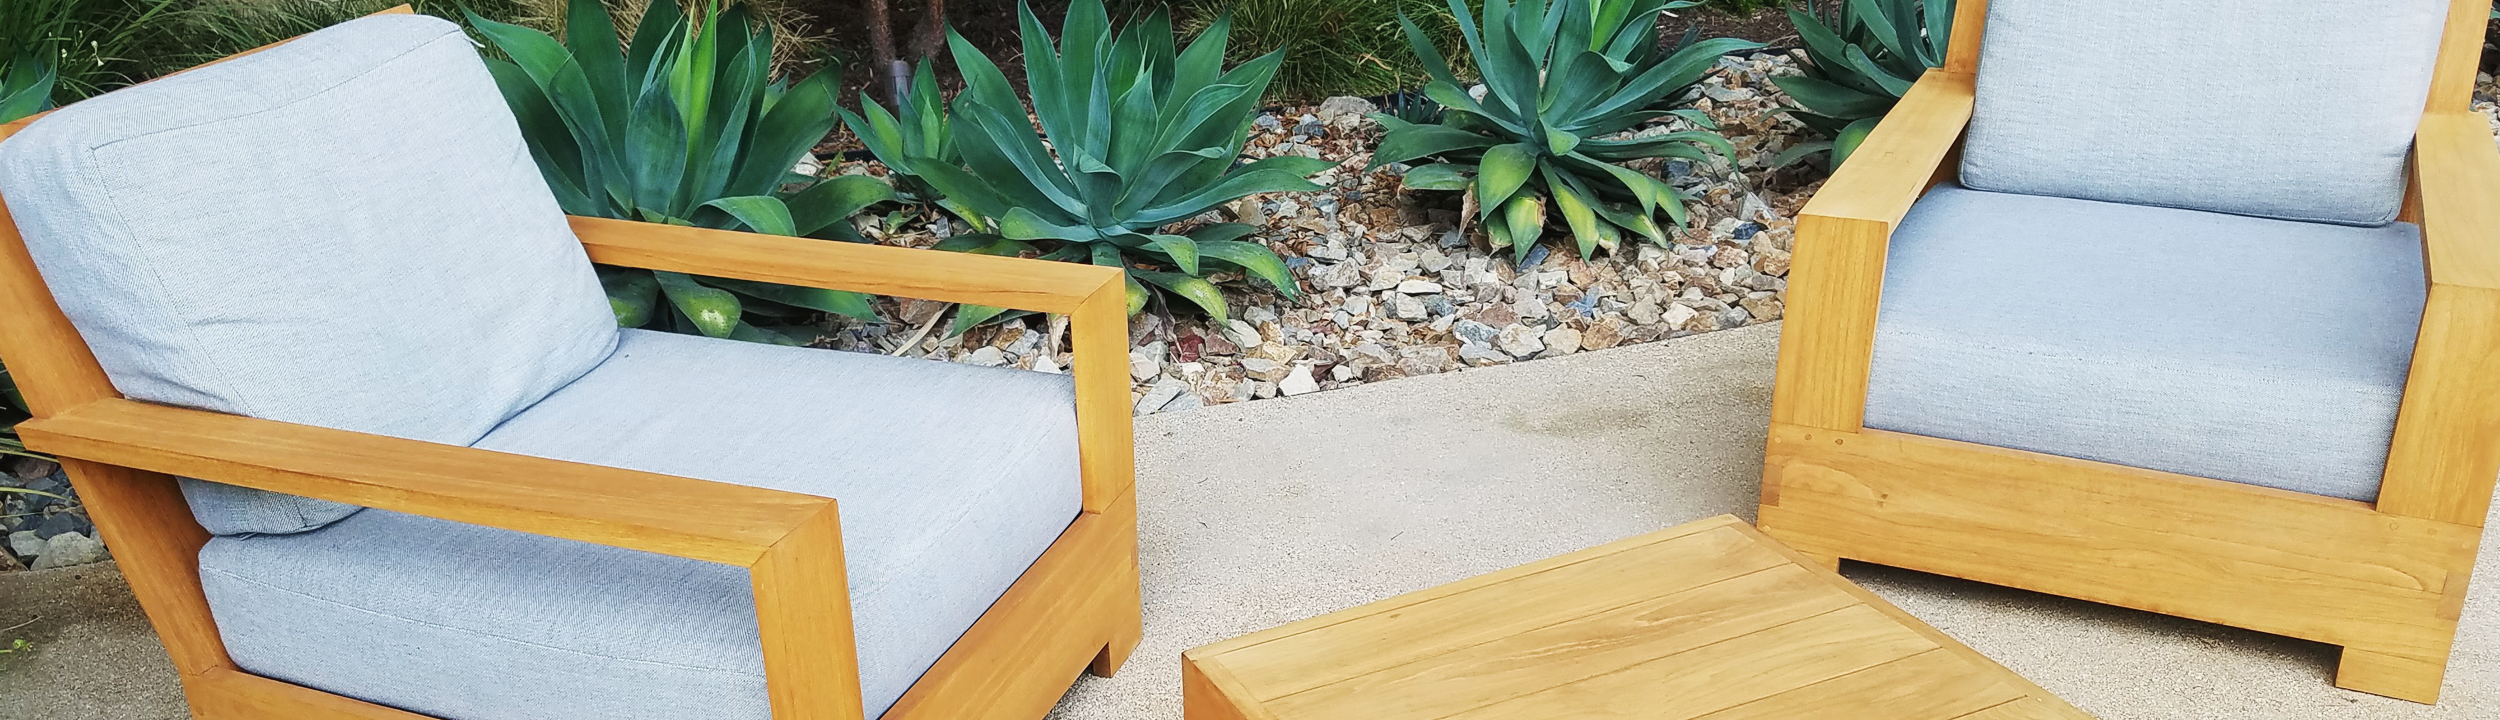 Laguna Hills teak patio set restoration | OC Teak